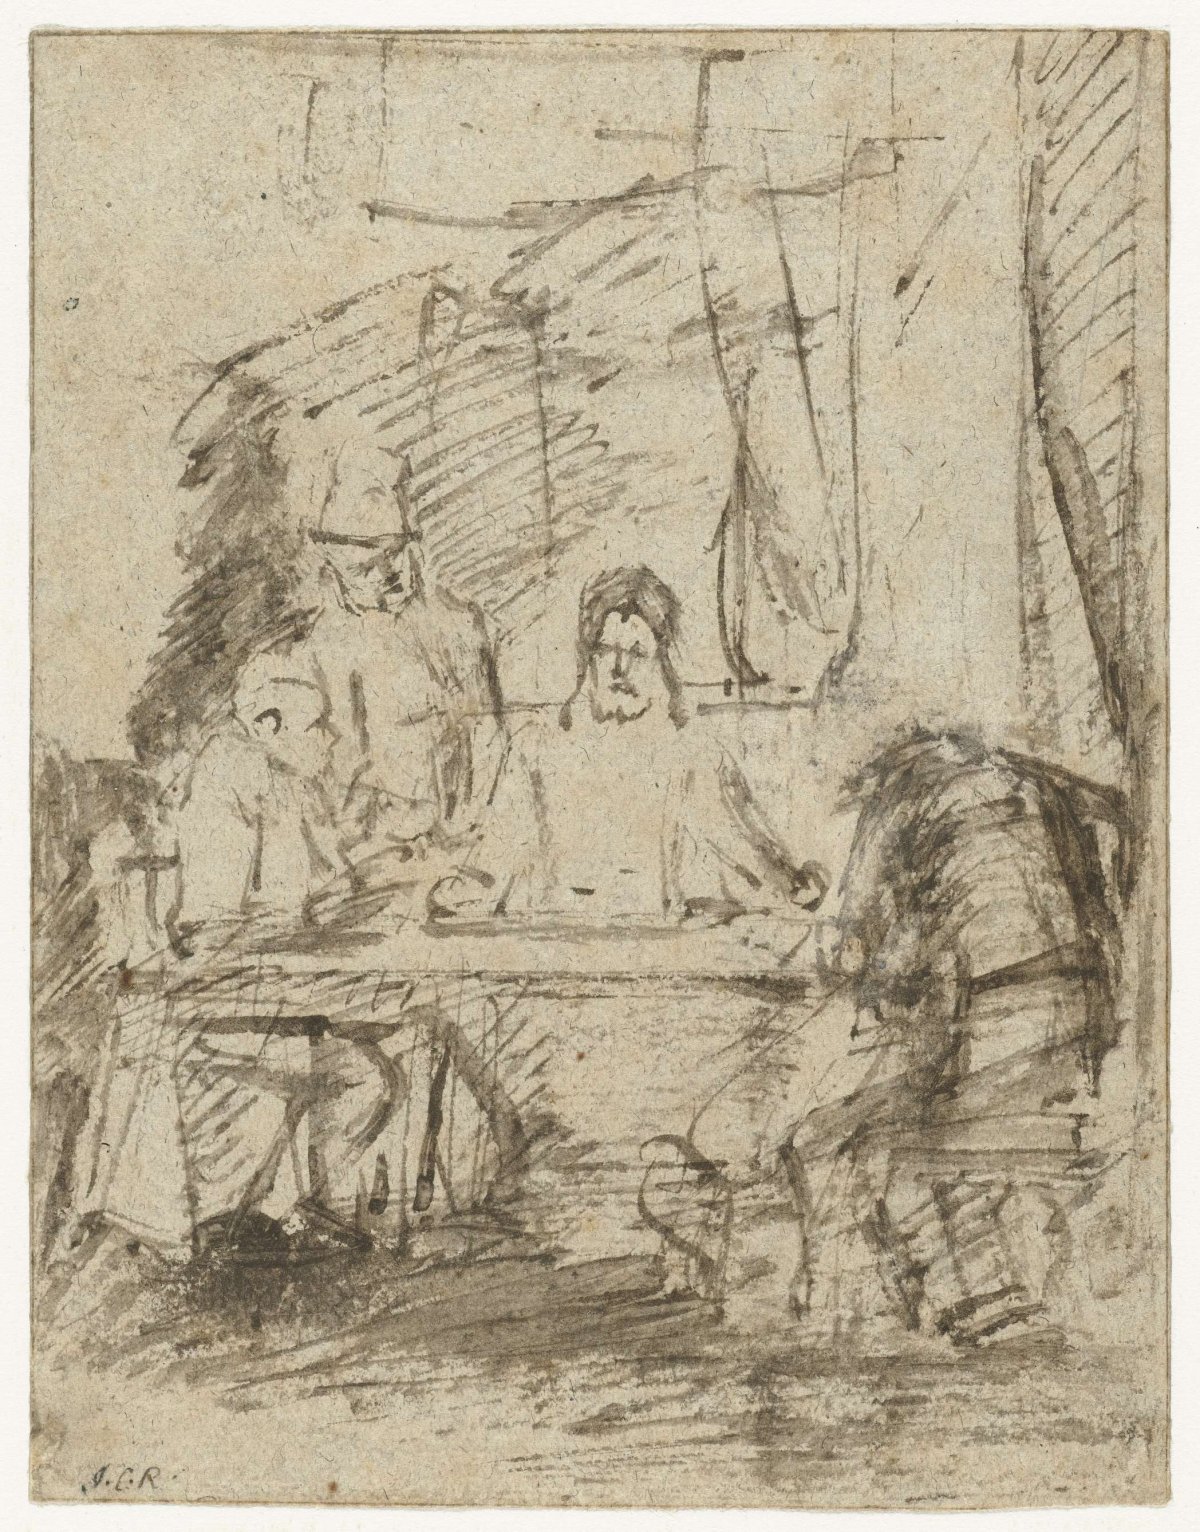 Supper at Emmaus, Rembrandt van Rijn, c. 1660